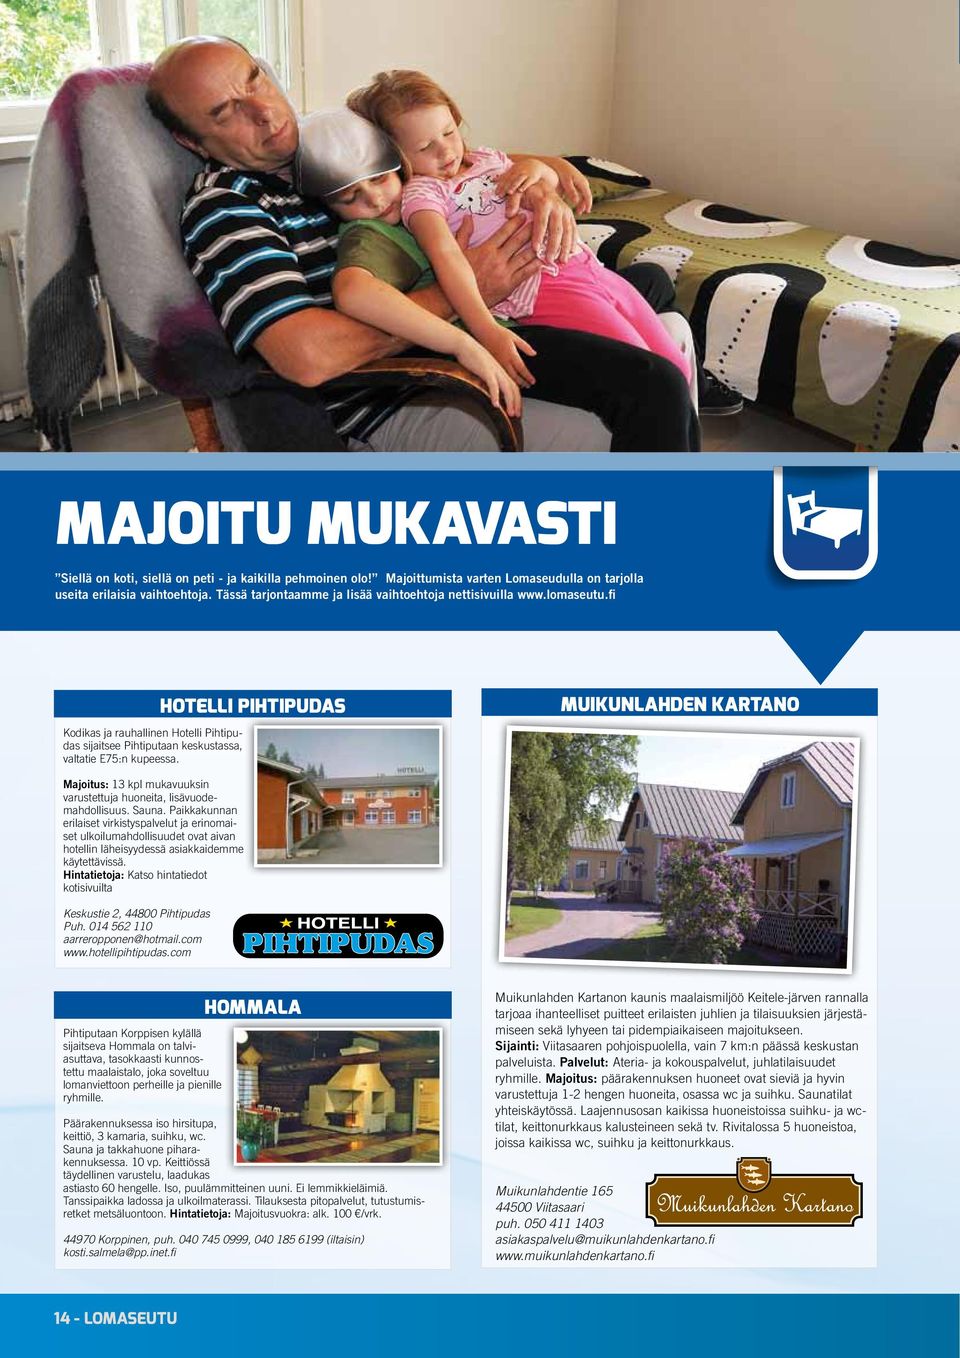 Hotelli Pihtipudas Muikunlahden Kartano Majoitus: 13 kpl mukavuuksin varustettuja huoneita, lisävuodemahdollisuus. Sauna.